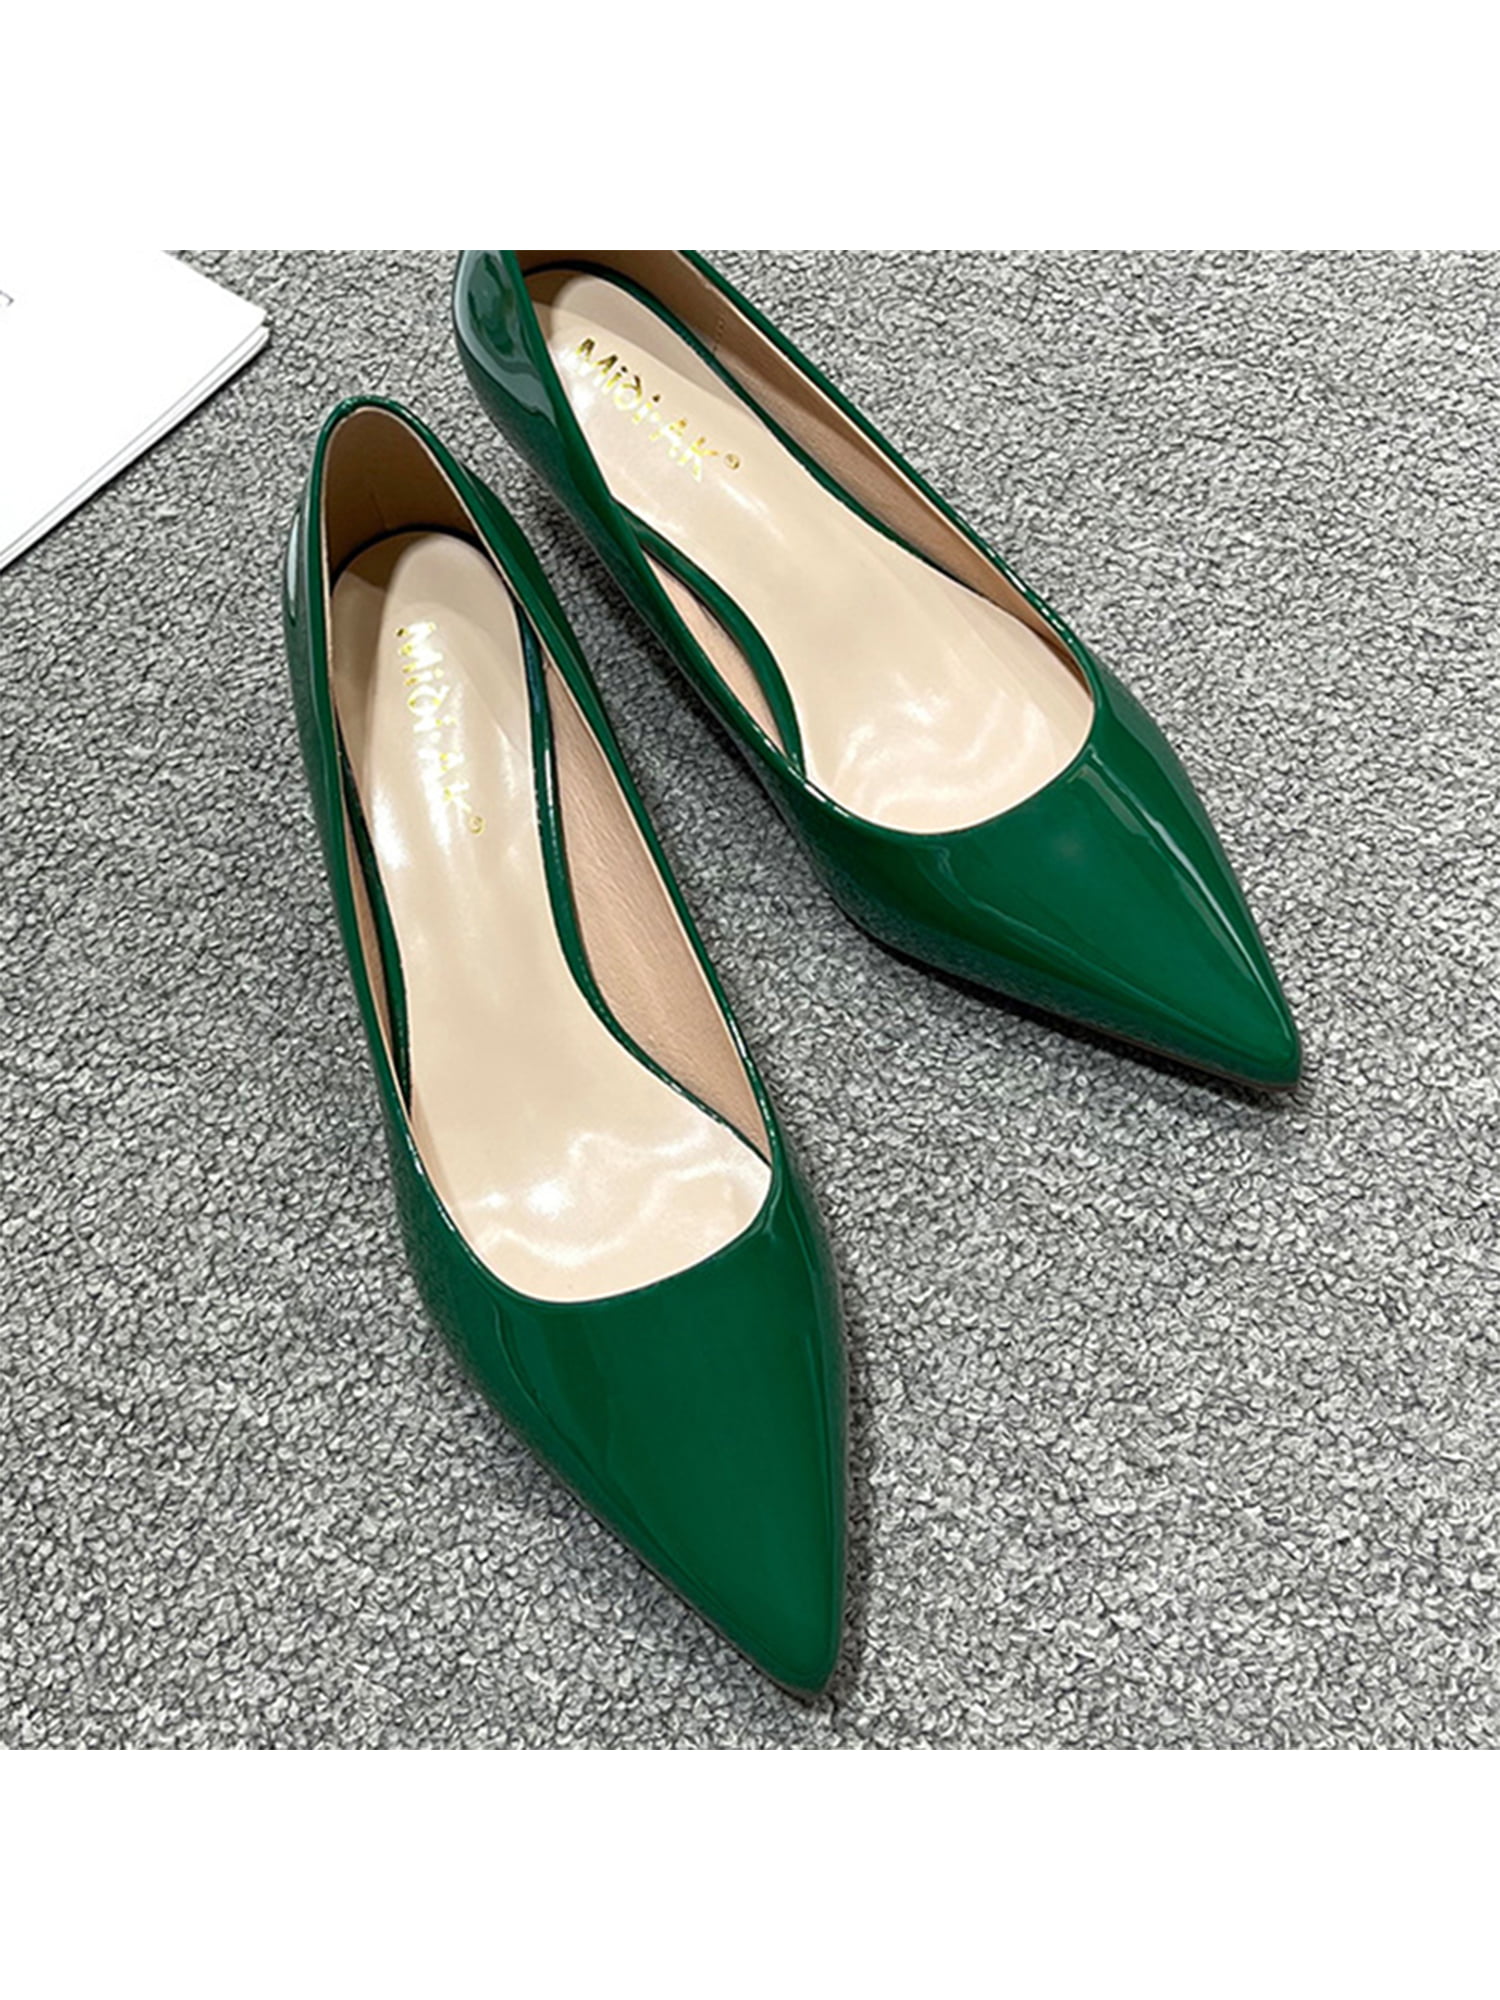 Buy Sherrif Shoes Womens Green Color Embellished Heels Online